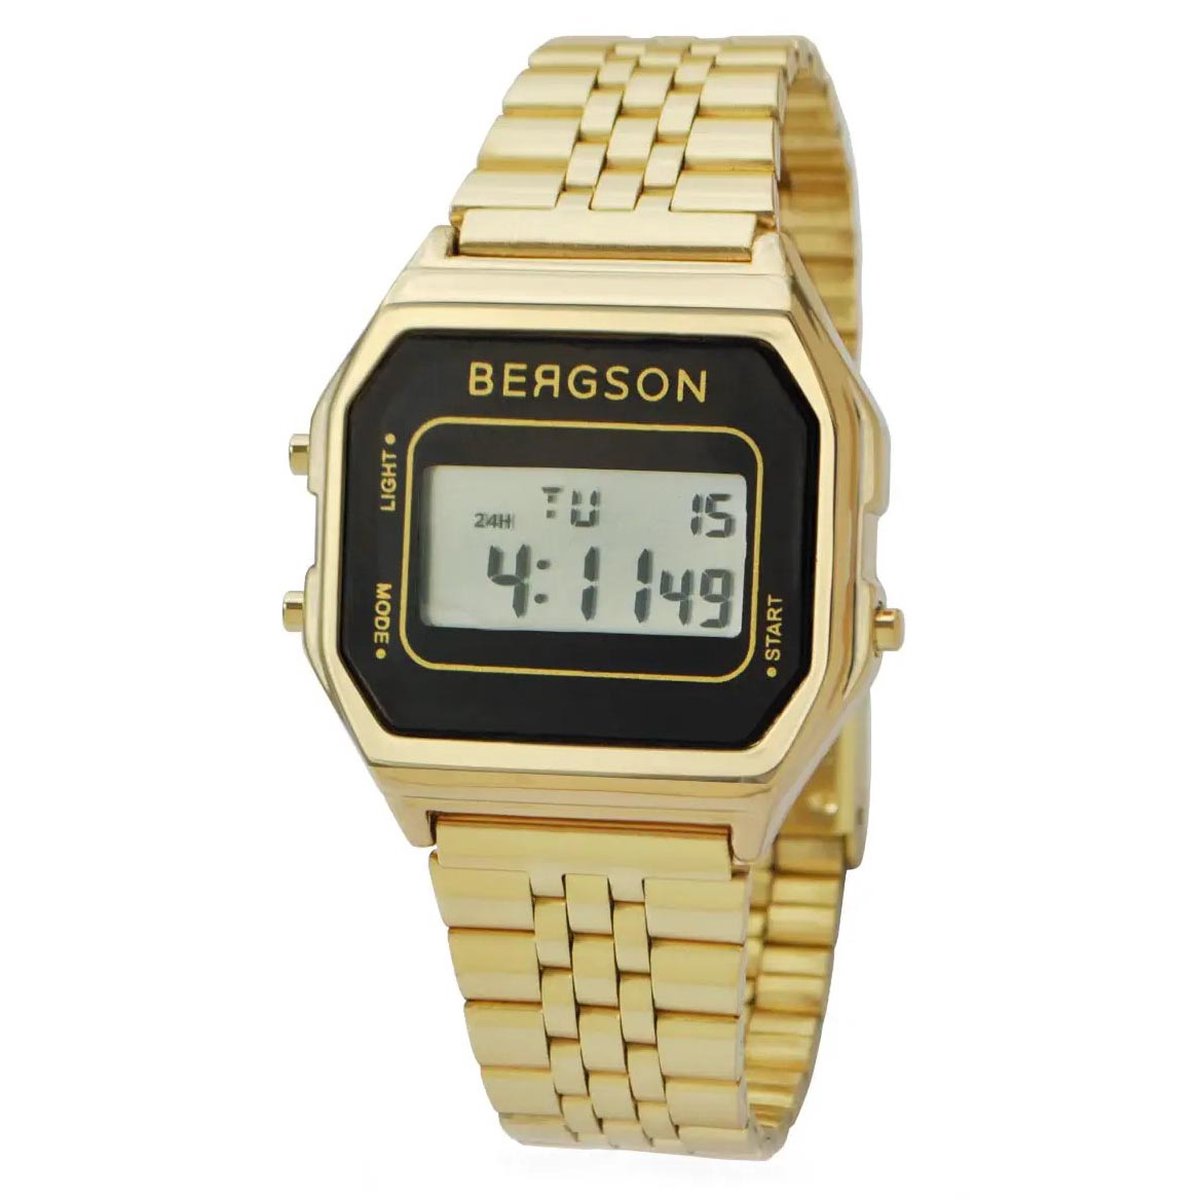 Bergson - Unisex Horloge Retro Watch - Goud